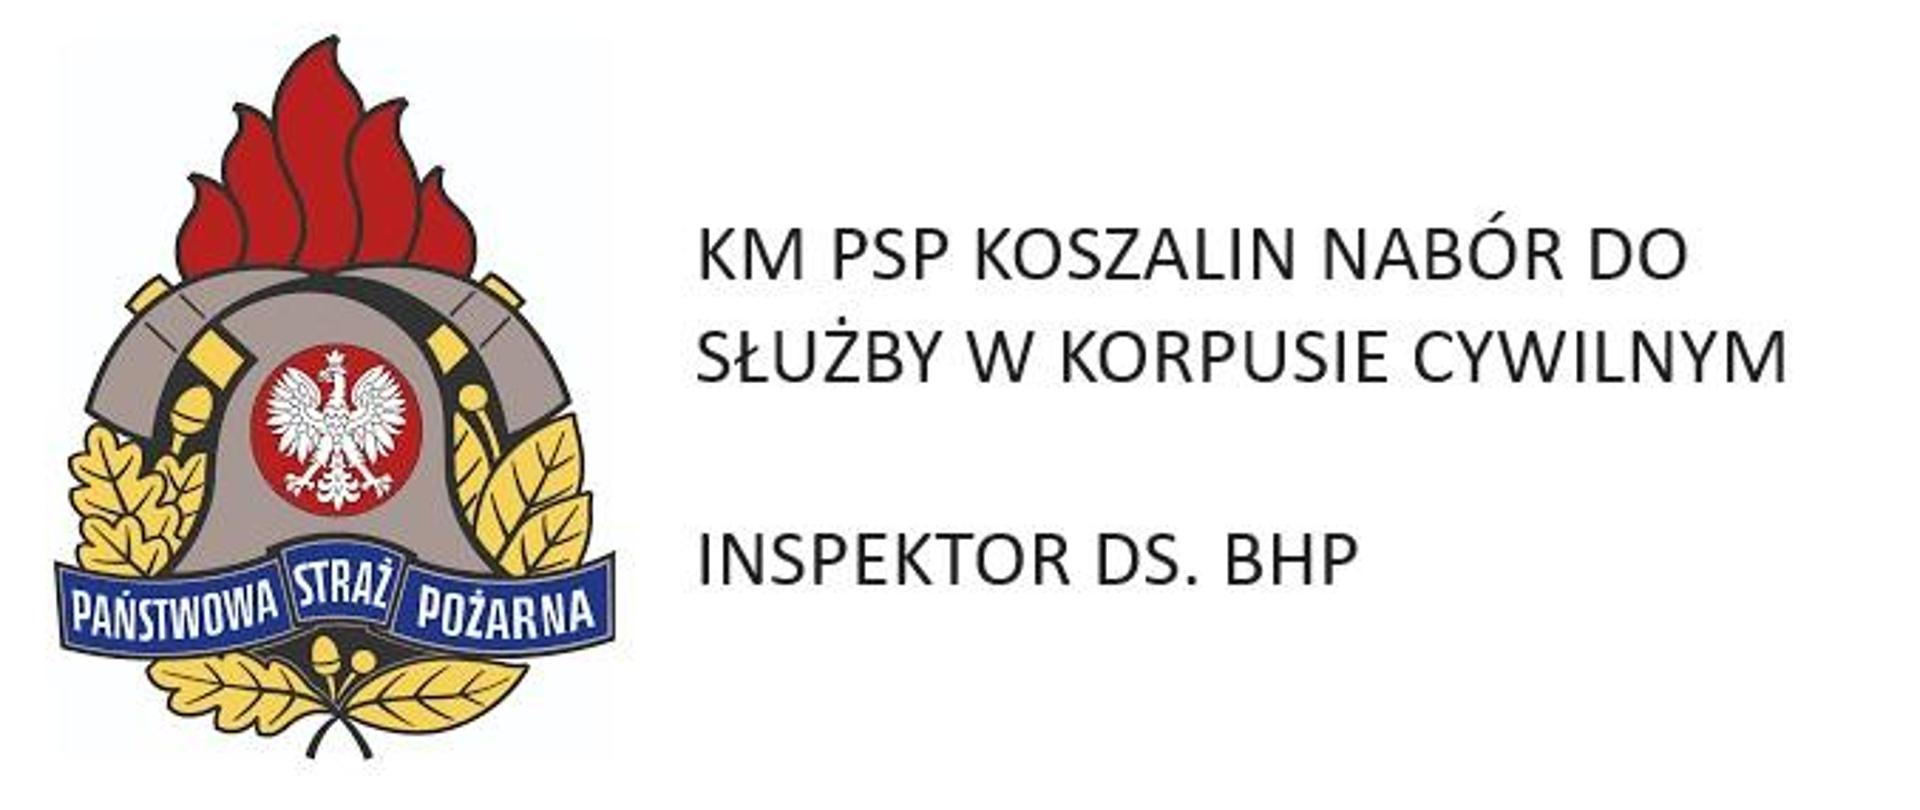 Nabór do służby w korpusie cywilnym BHP KM PSP Koszalin